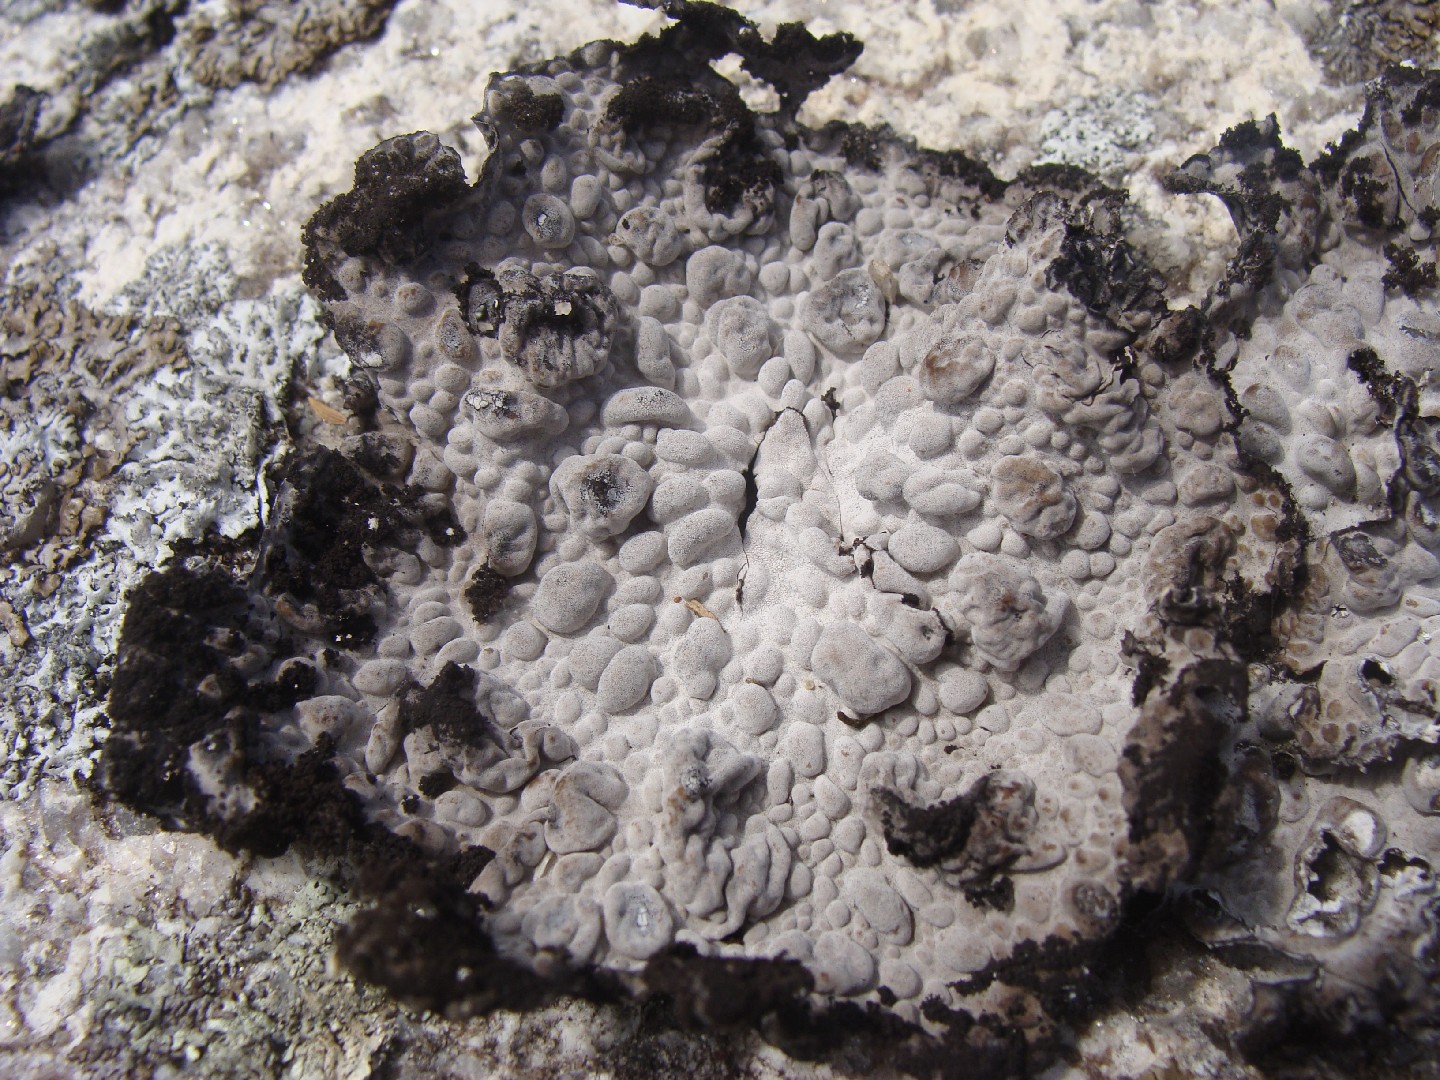 Blistered navel lichens (Lasallia)